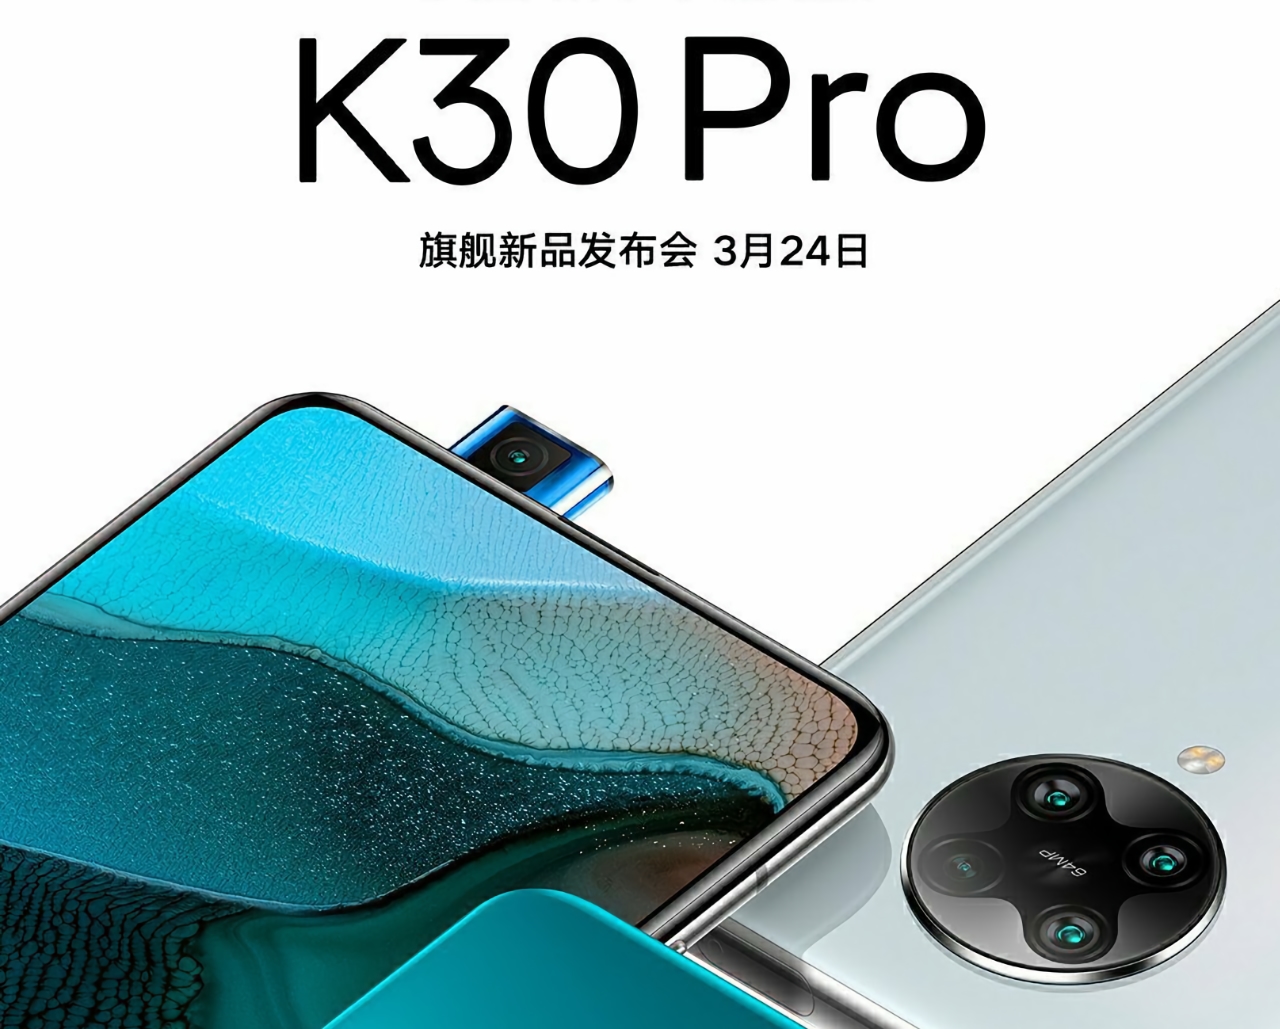 żadne 120 Hz: Xiaomi potwierdziło, że Redmi K30 Pro otrzyma wyświetlacz AMOLED o 60 Hz